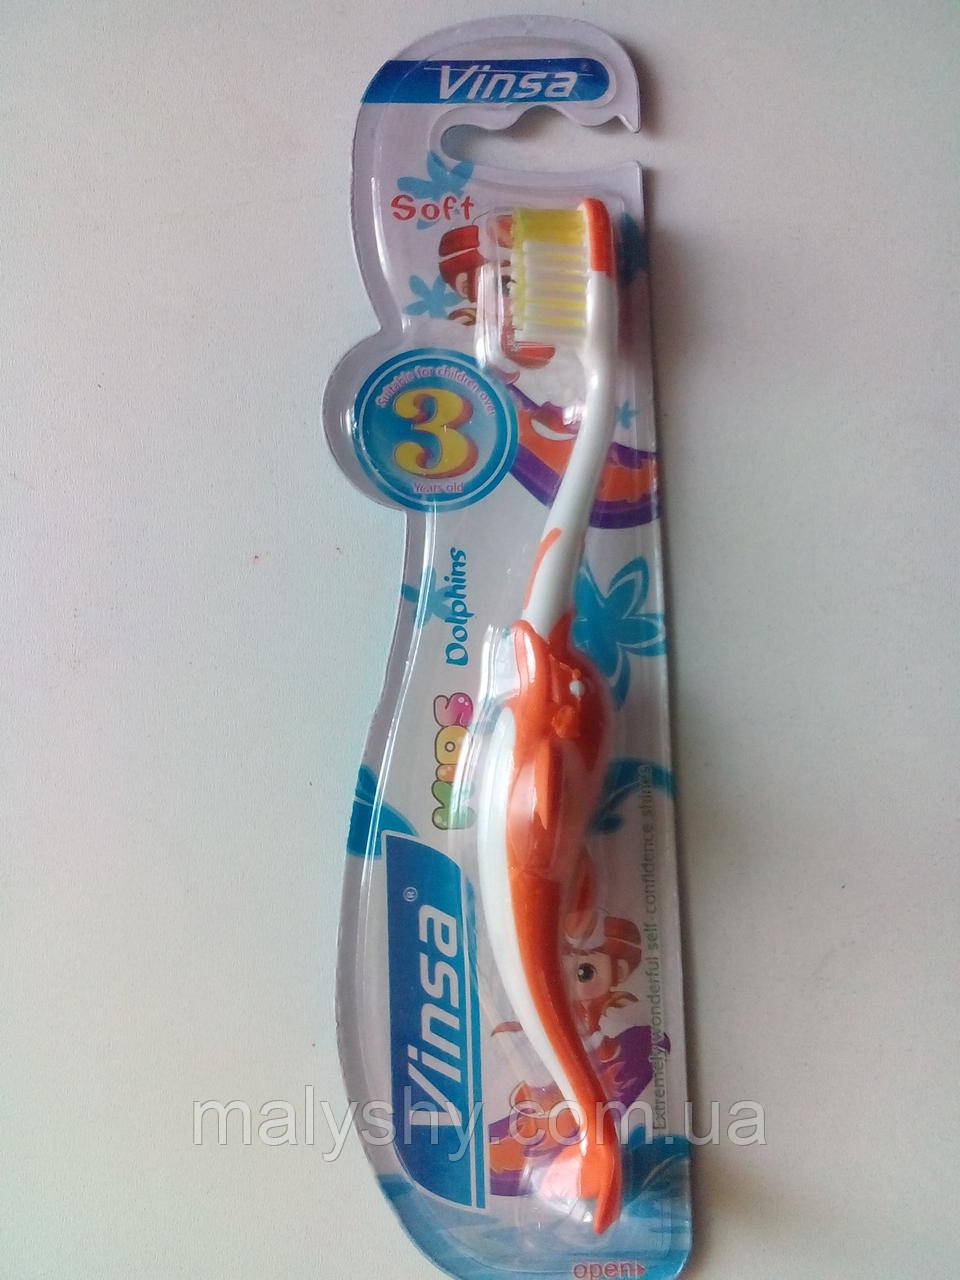 Дитяча зубна щітка «Vinsa Soft» 15 см дельфін, від 3-х років ПОМАРАНЧЕВА